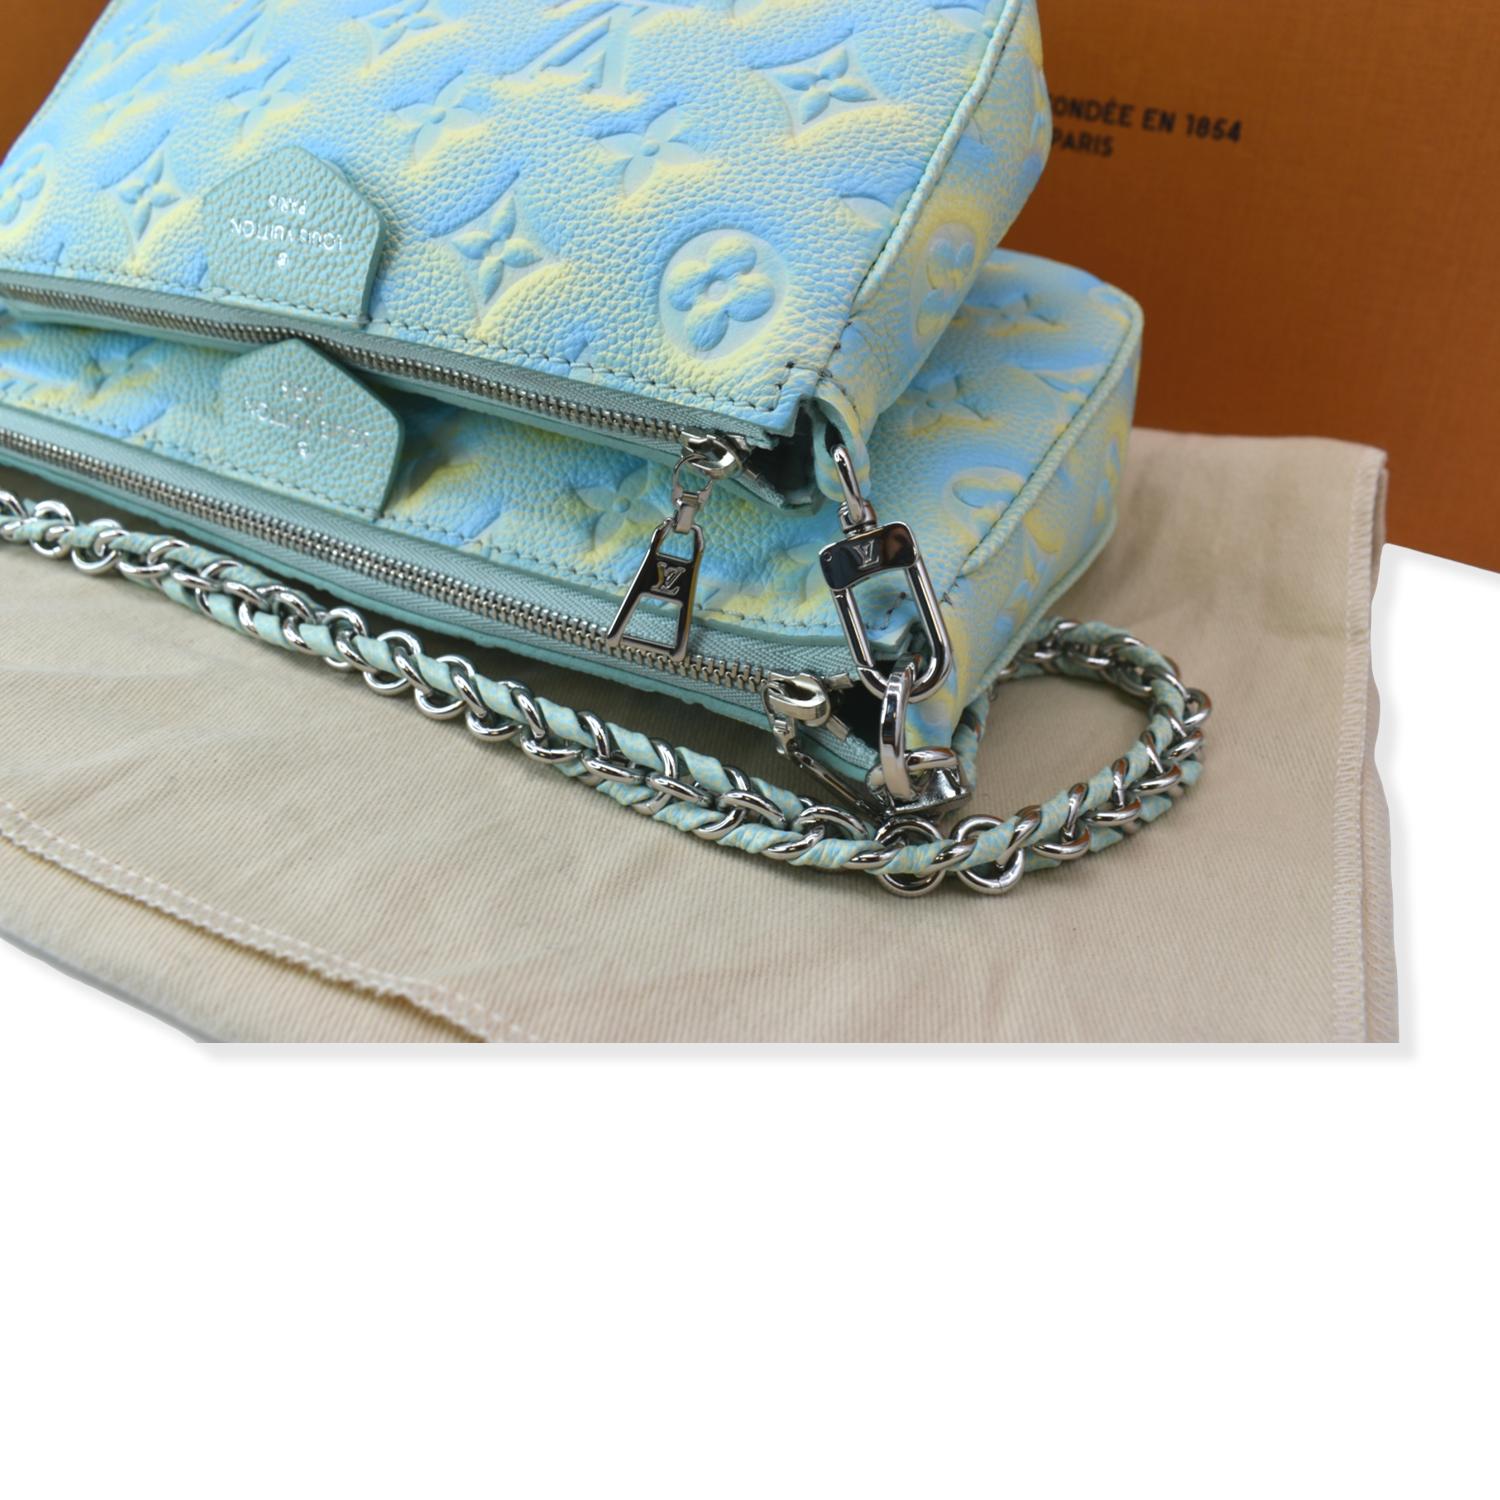 FWRD Renew Louis Vuitton Pochette Accessoires Shoulder Bag in Multi